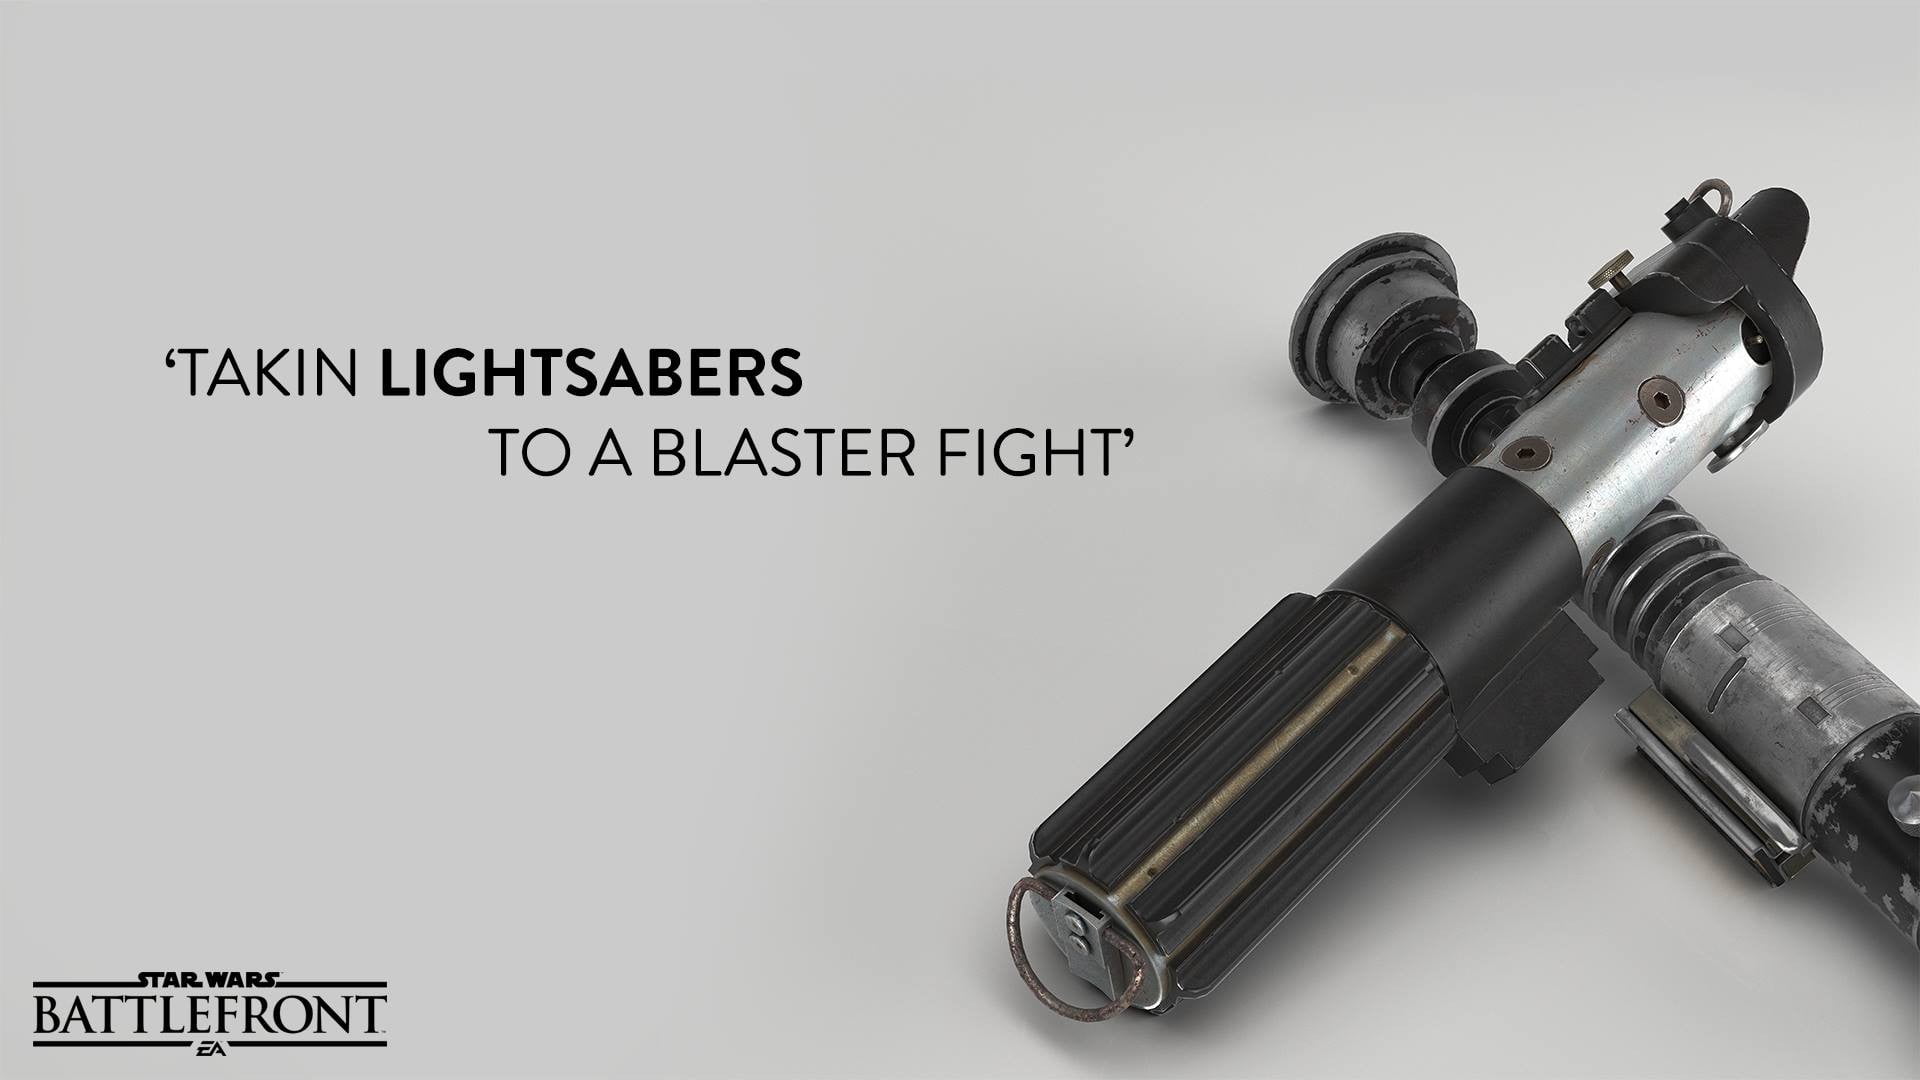 two gray-and-black lightsabers, Star Wars: Battlefront, Star Wars, Darth Vader, lightsaber